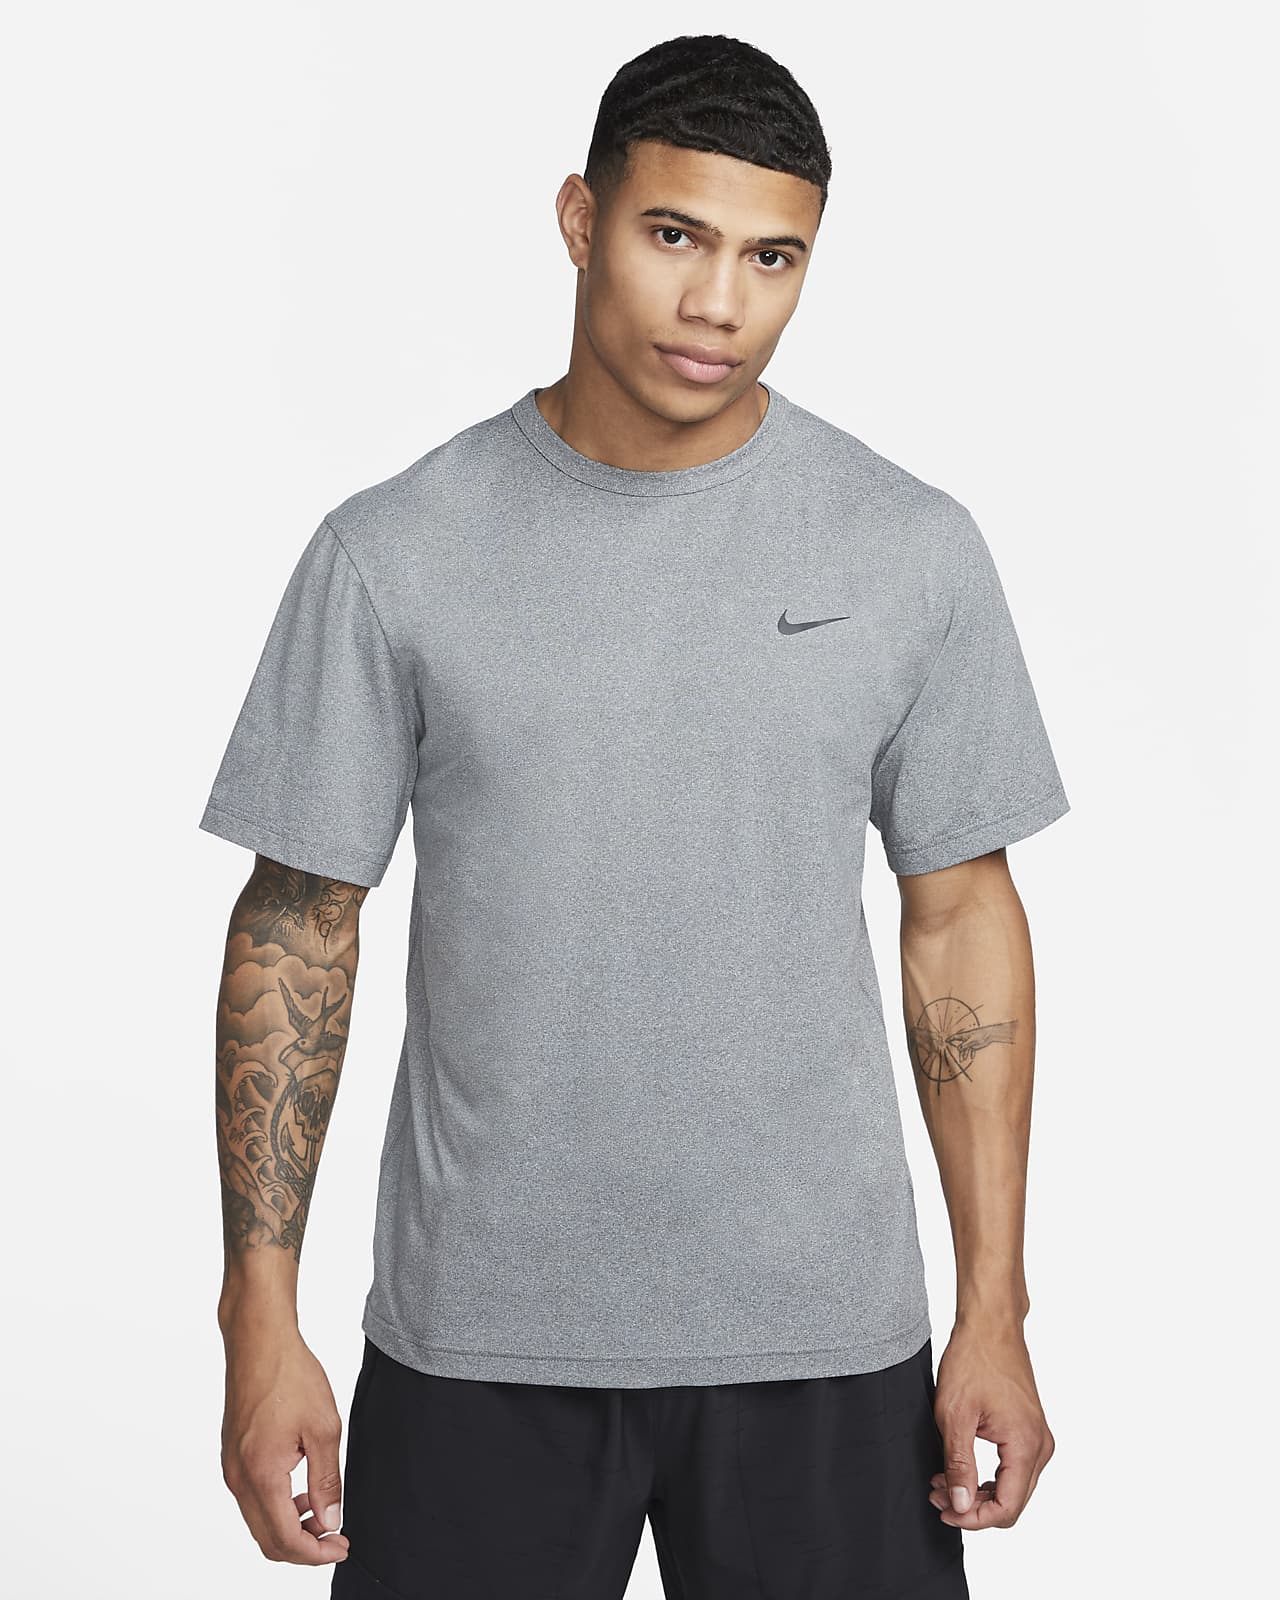 Nike Hyverse Camiseta de manga corta Dri-FIT versátil con protección UV - Hombre